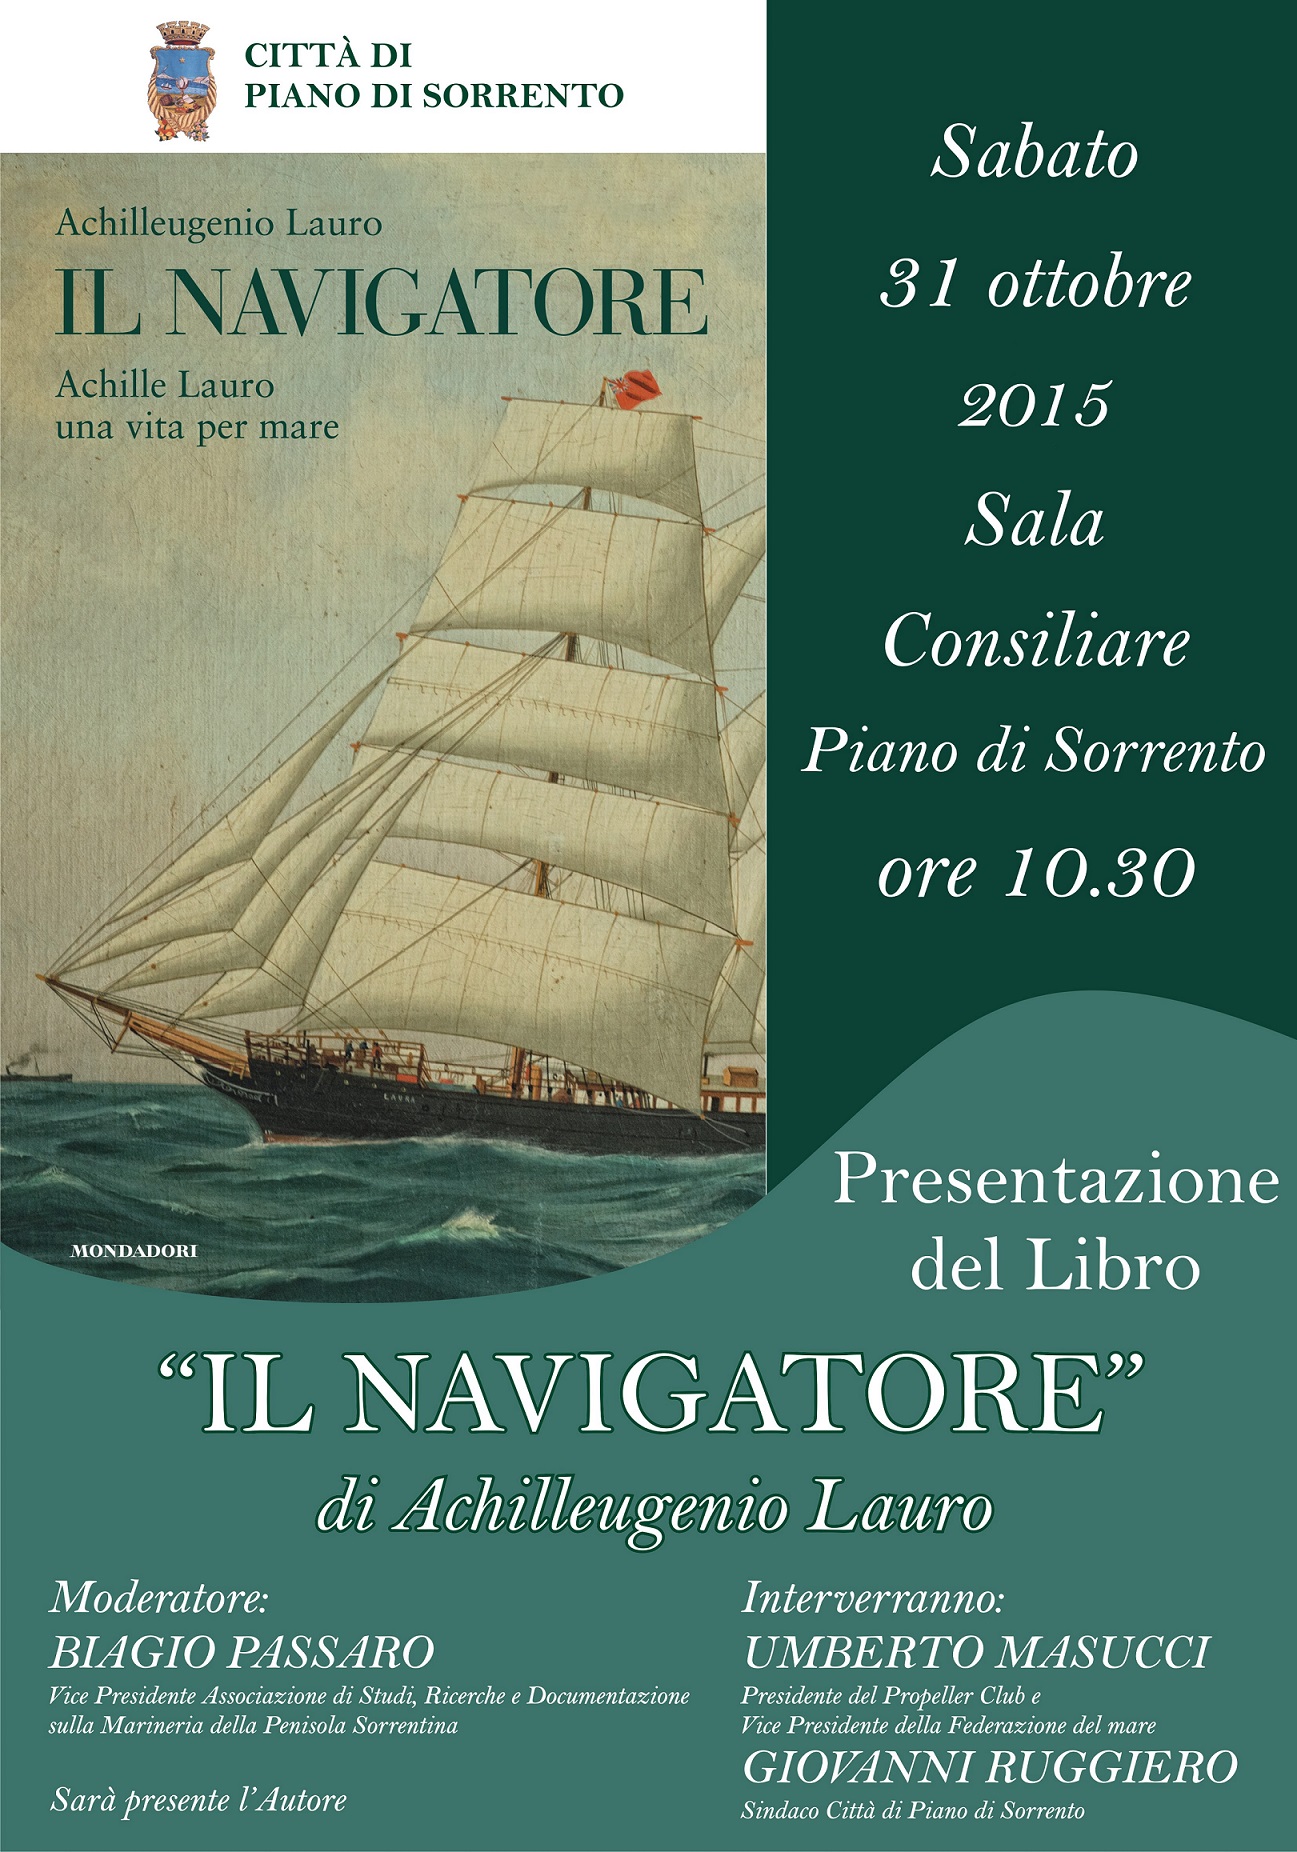  Presentazione del libro “Il Navigatore” di Achilleugenio Lauro a Piano di Sorrento